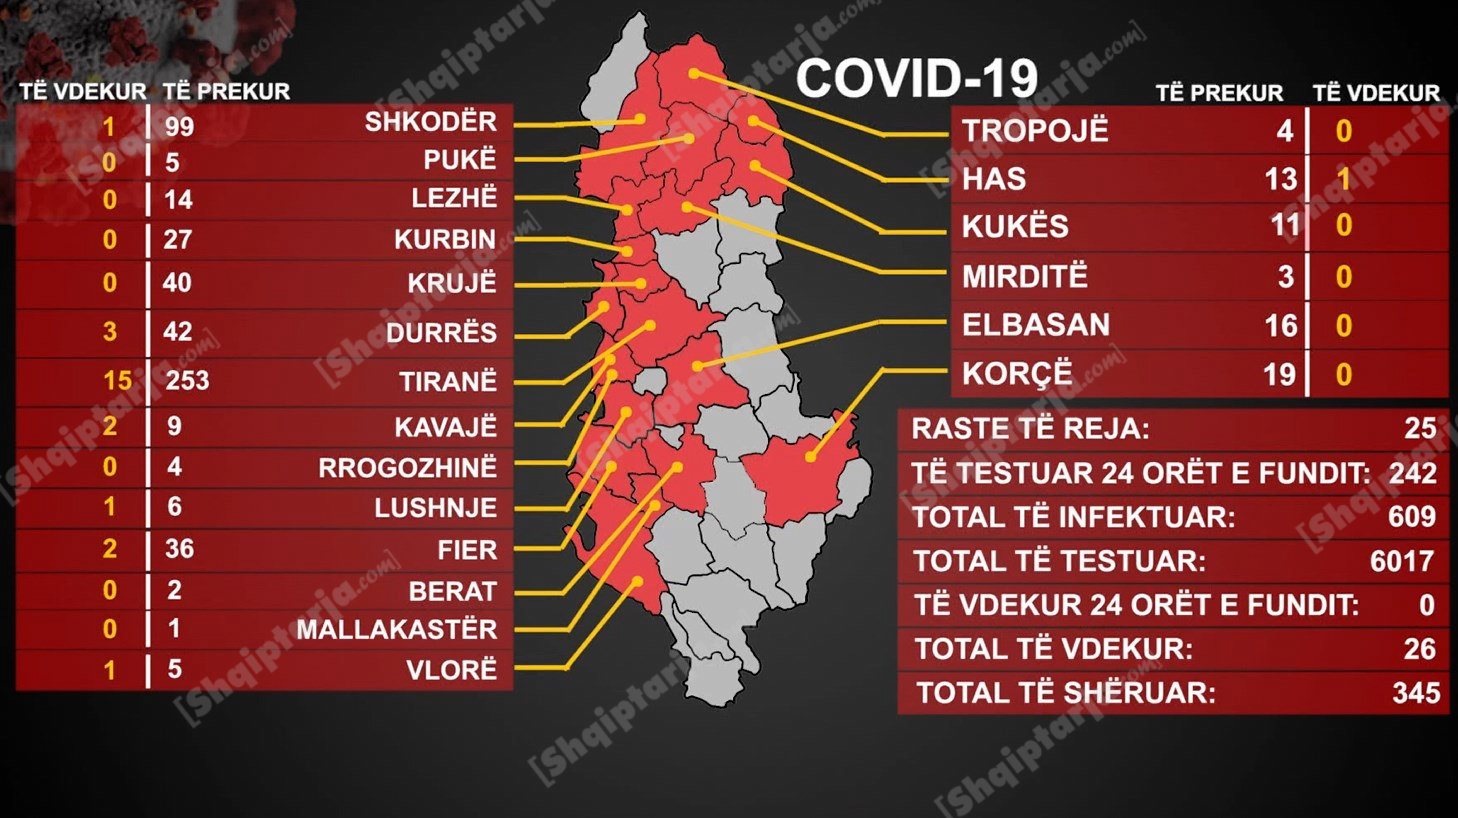 25 raste të reja me COVID-19 sot, 609 numri i të infektuarve